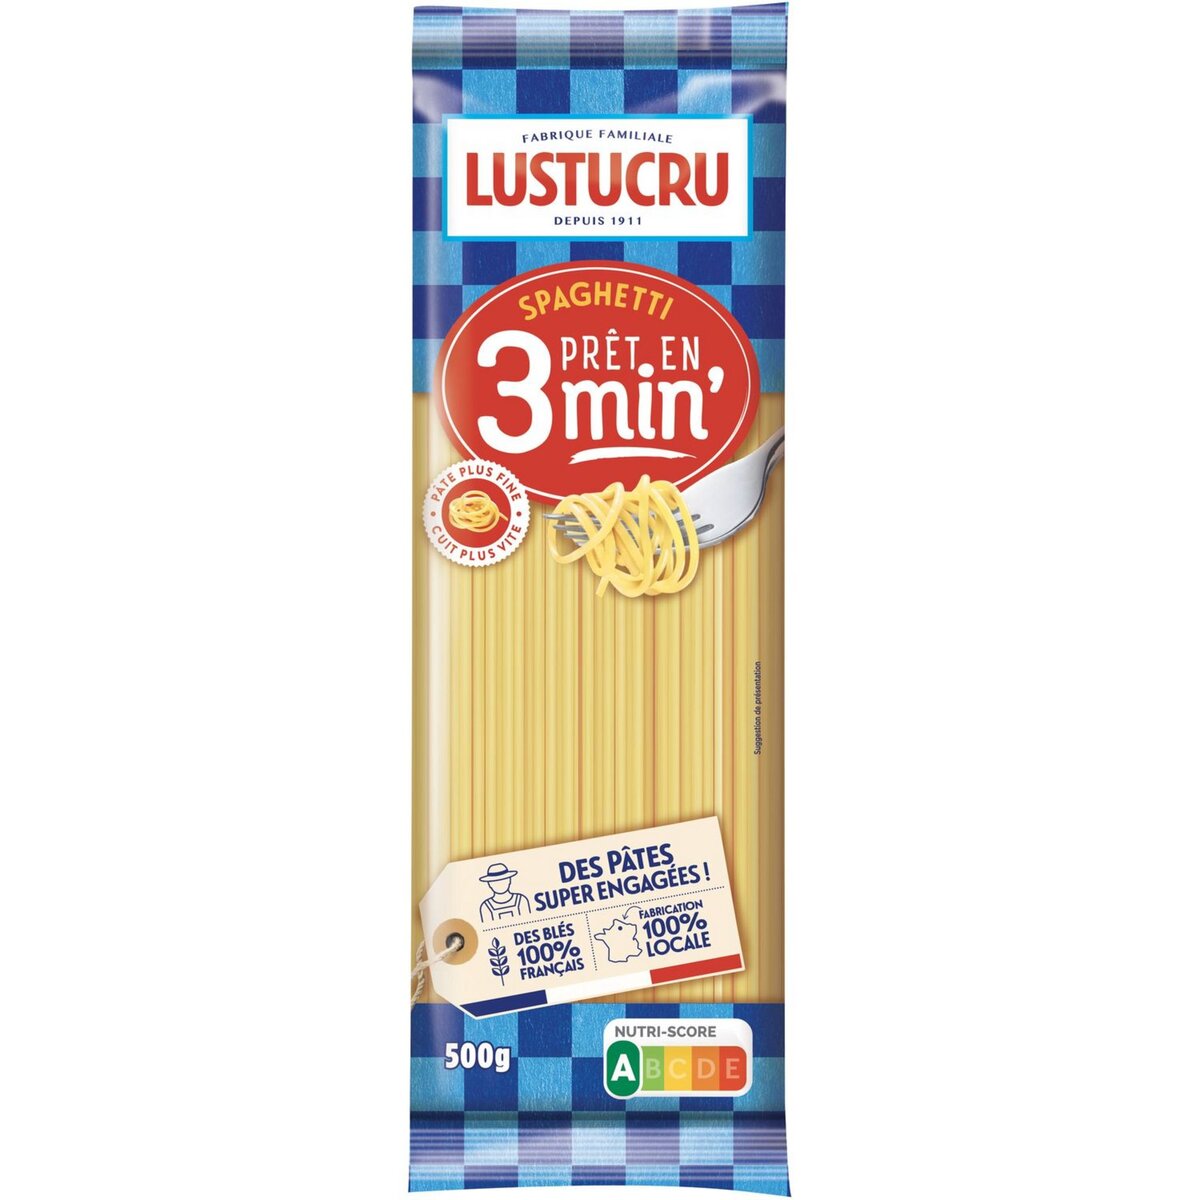 LUSTUCRU Lustucru al dente spaghetti 3 min 500g